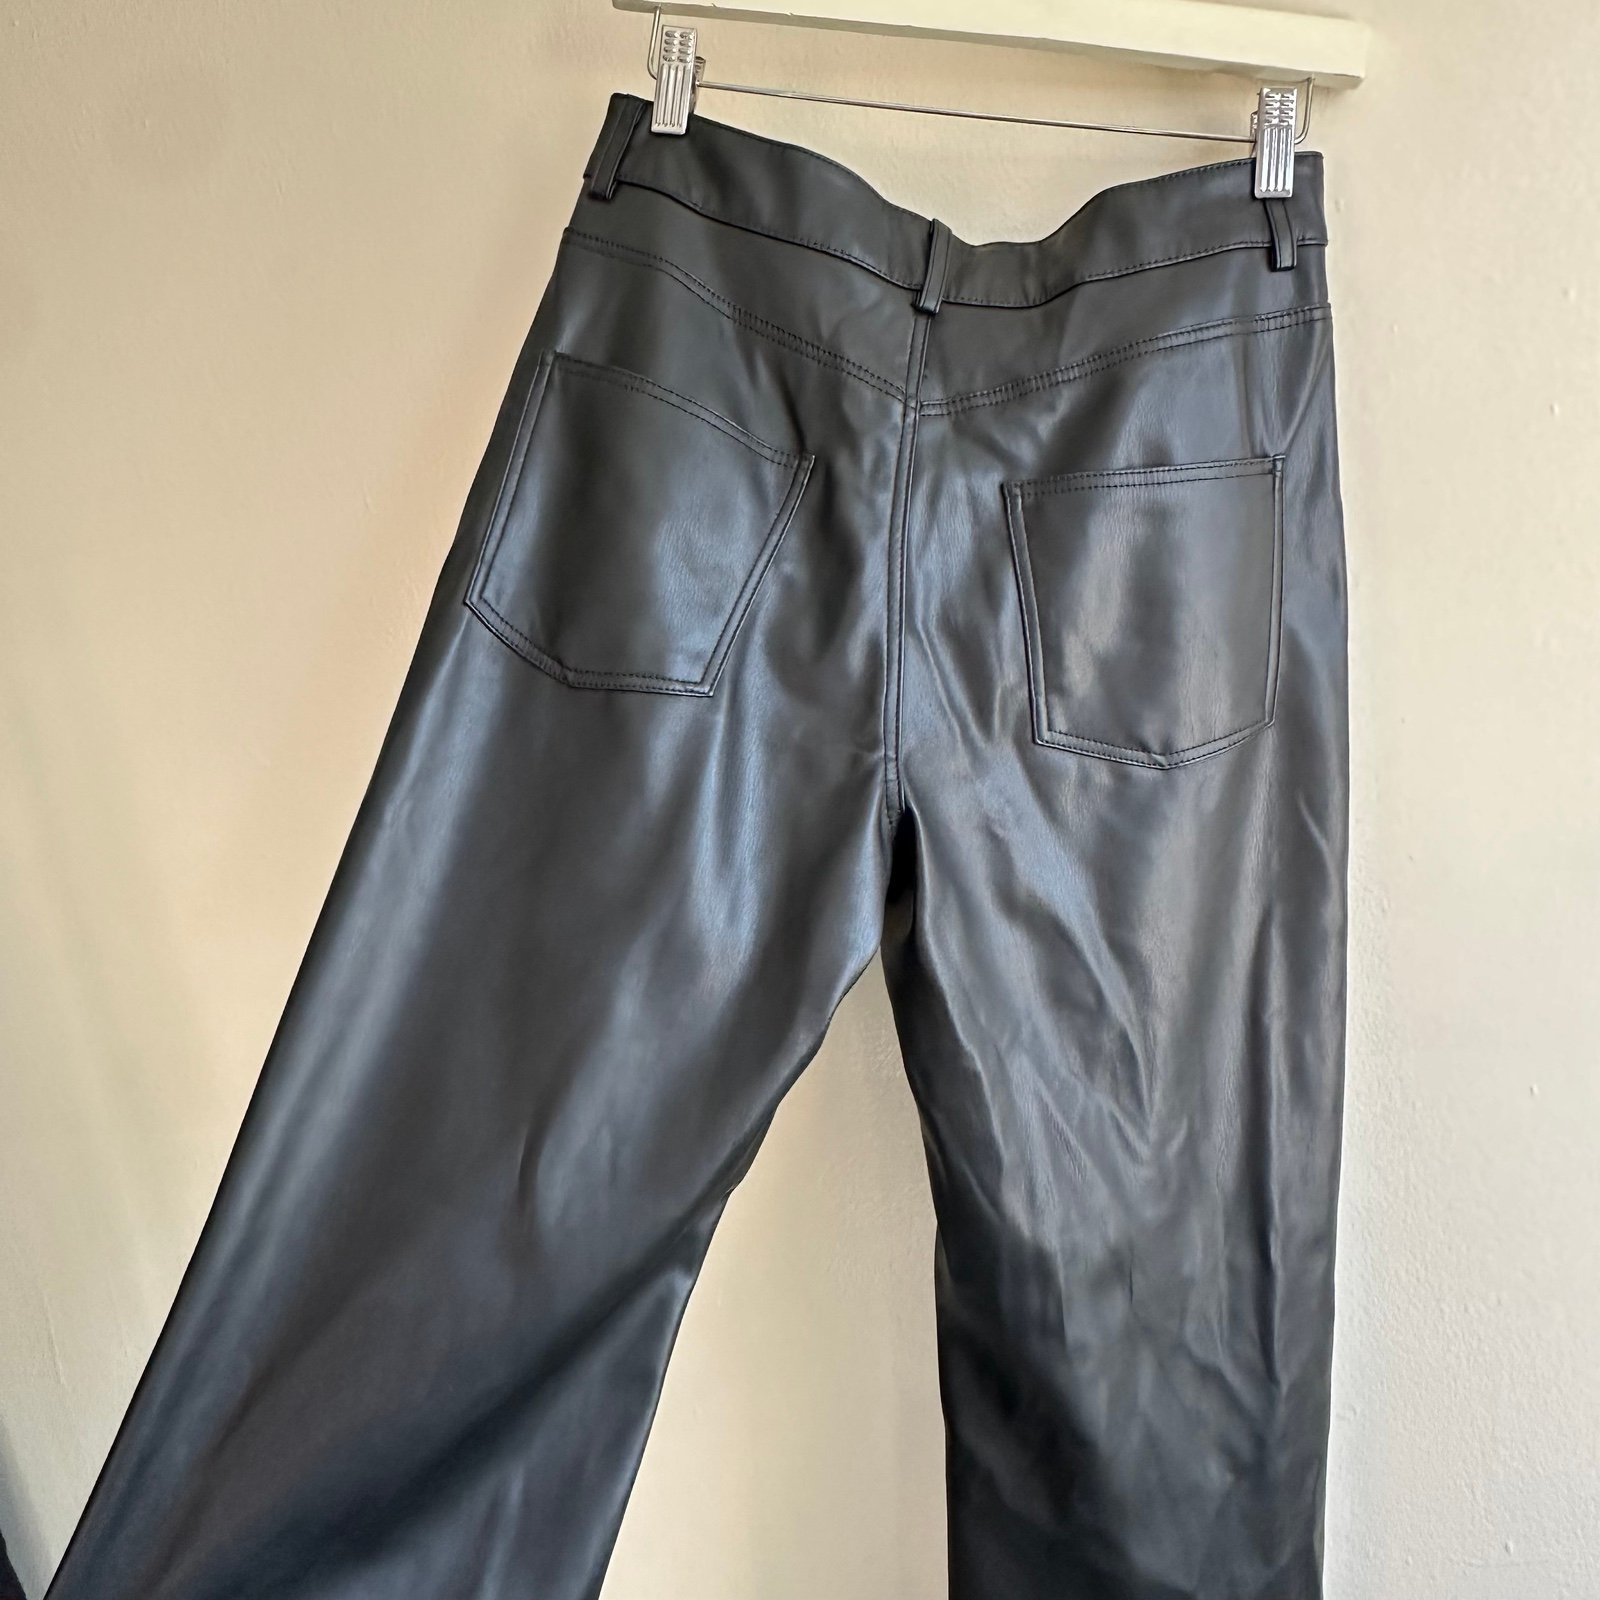 large discount Zara leather pants HxKFTkyn4 best sale